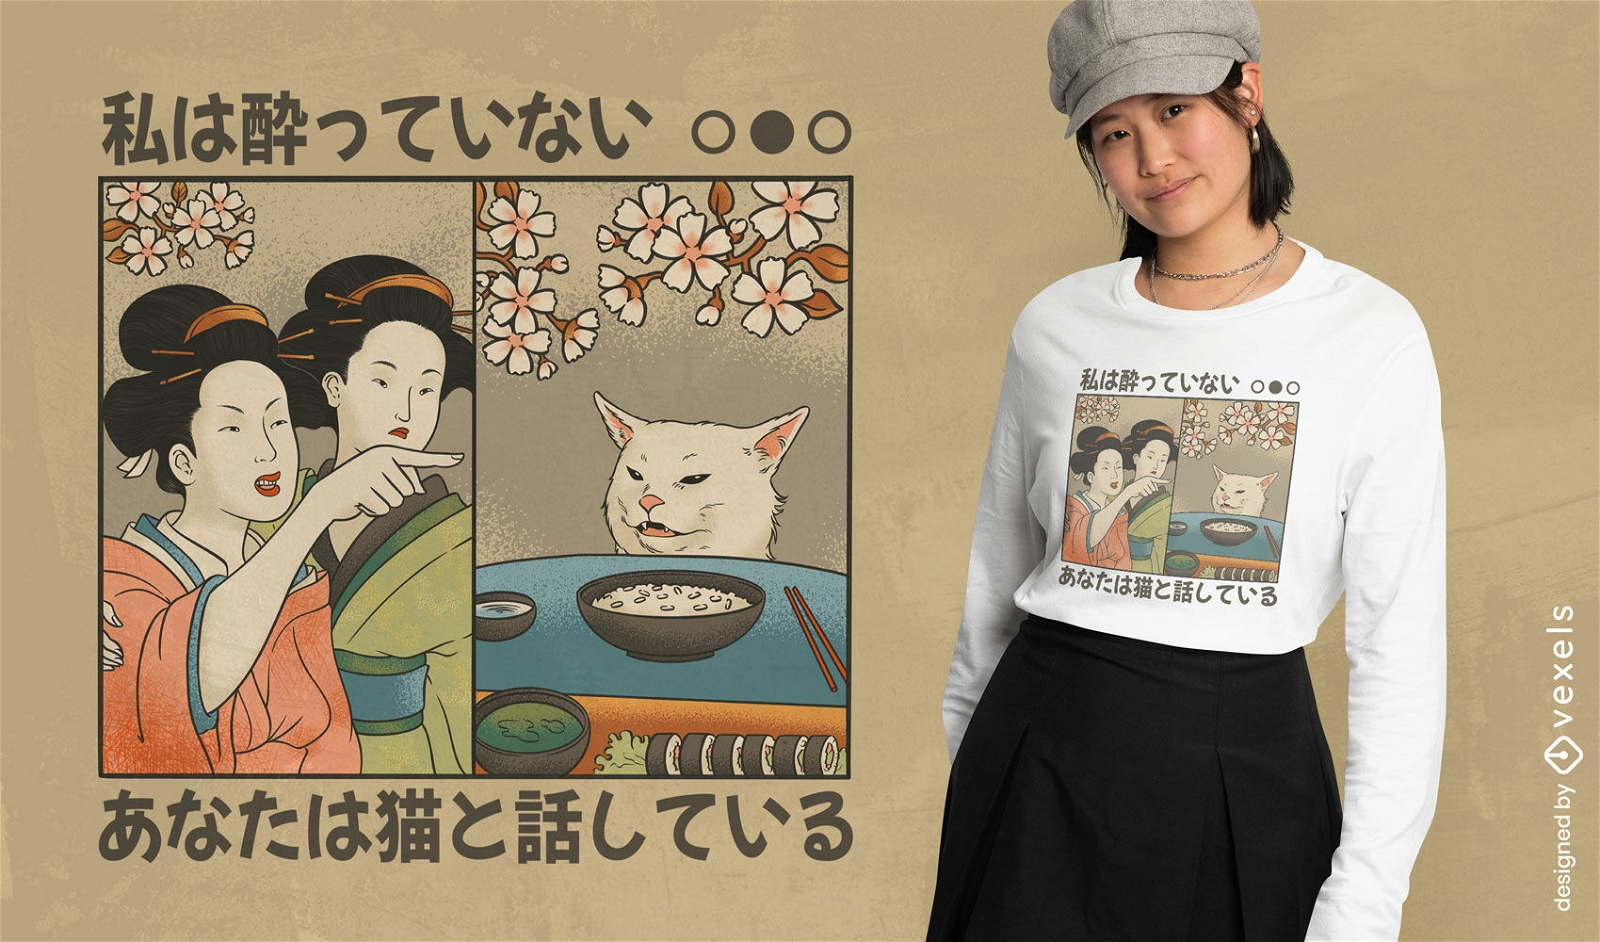 Mujer japonesa le grita al dise?o de la camiseta del meme del gato